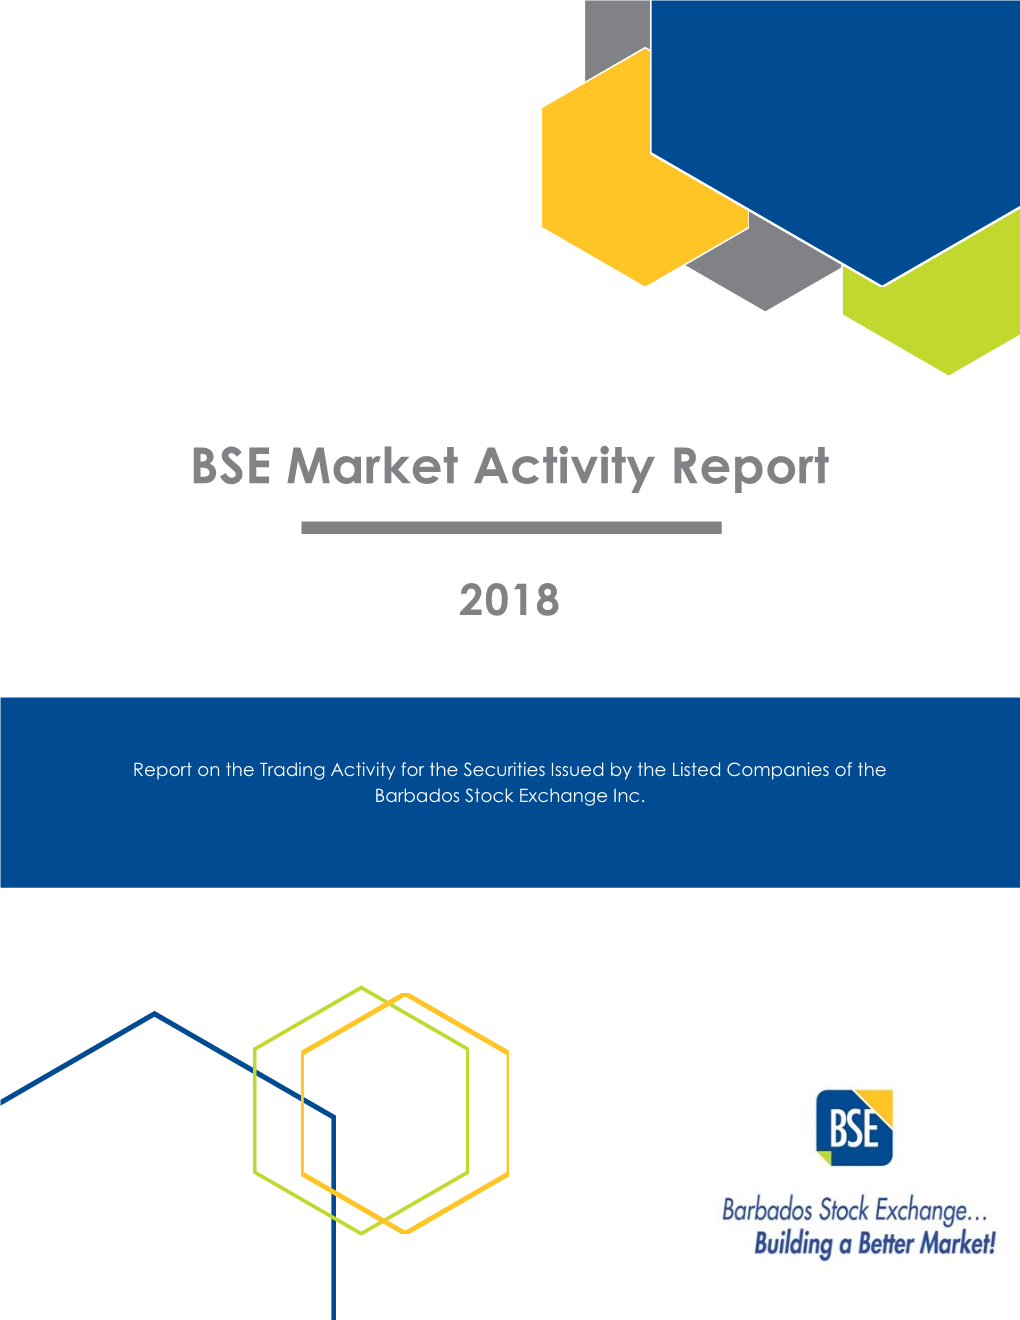 BSE Market Activity Report 2018